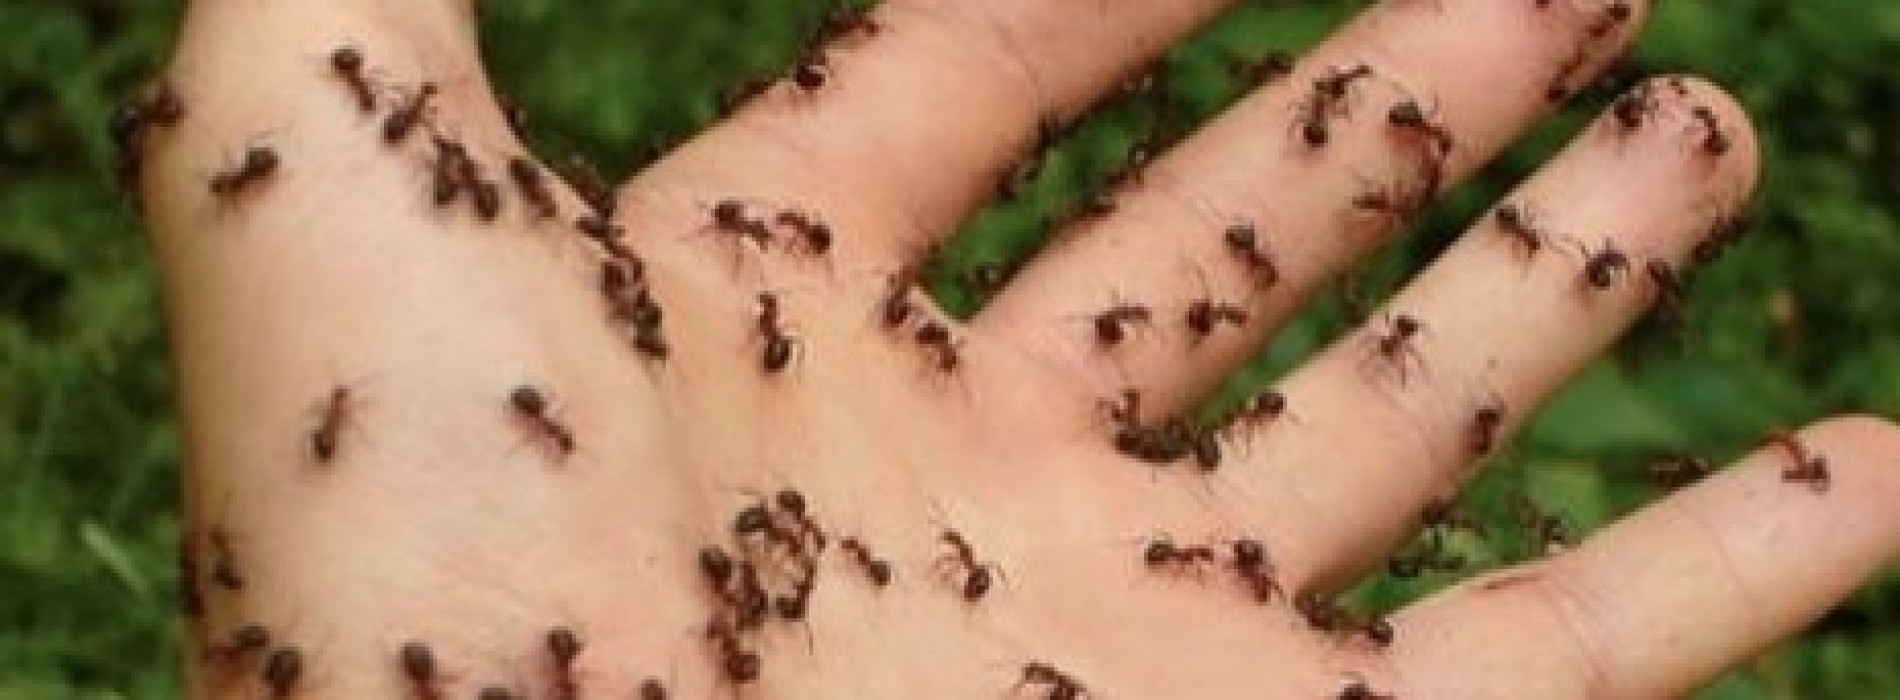 Reken af met die mieren door dit zelfgemaakte mengsel in je huis te spuiten!